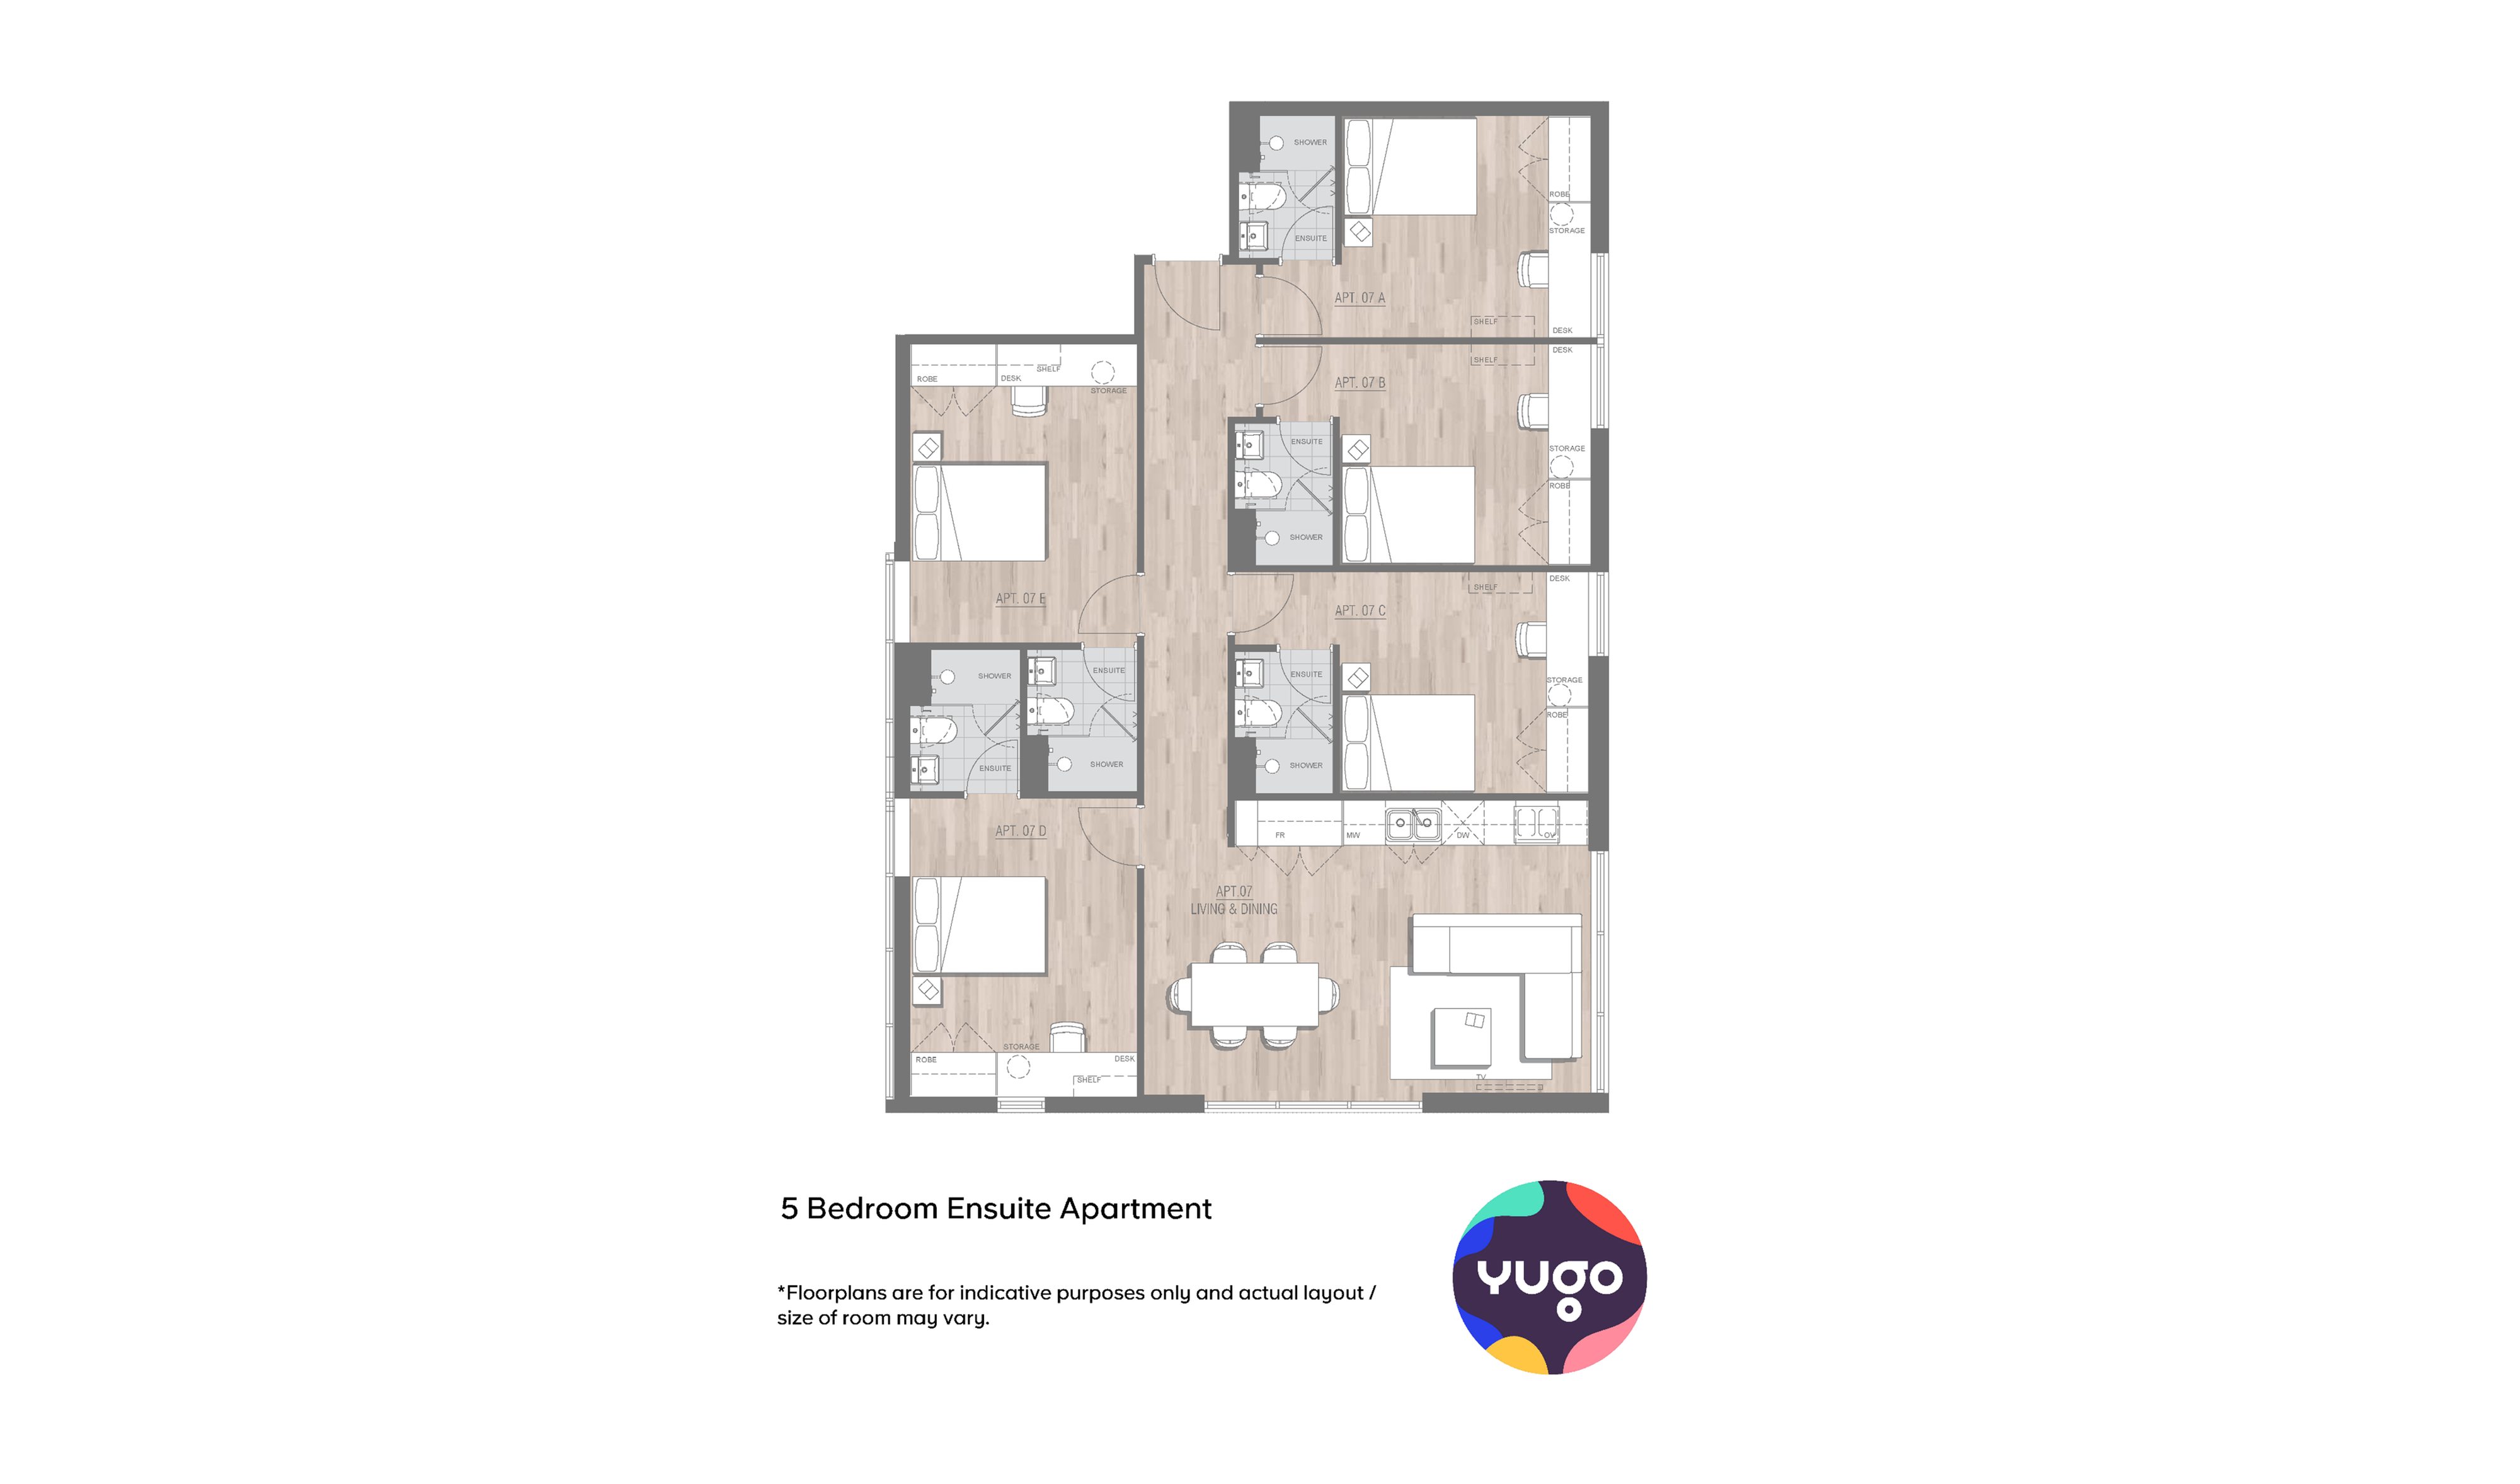 Appartement mit 5 Schlafzimmern und Bad (1)